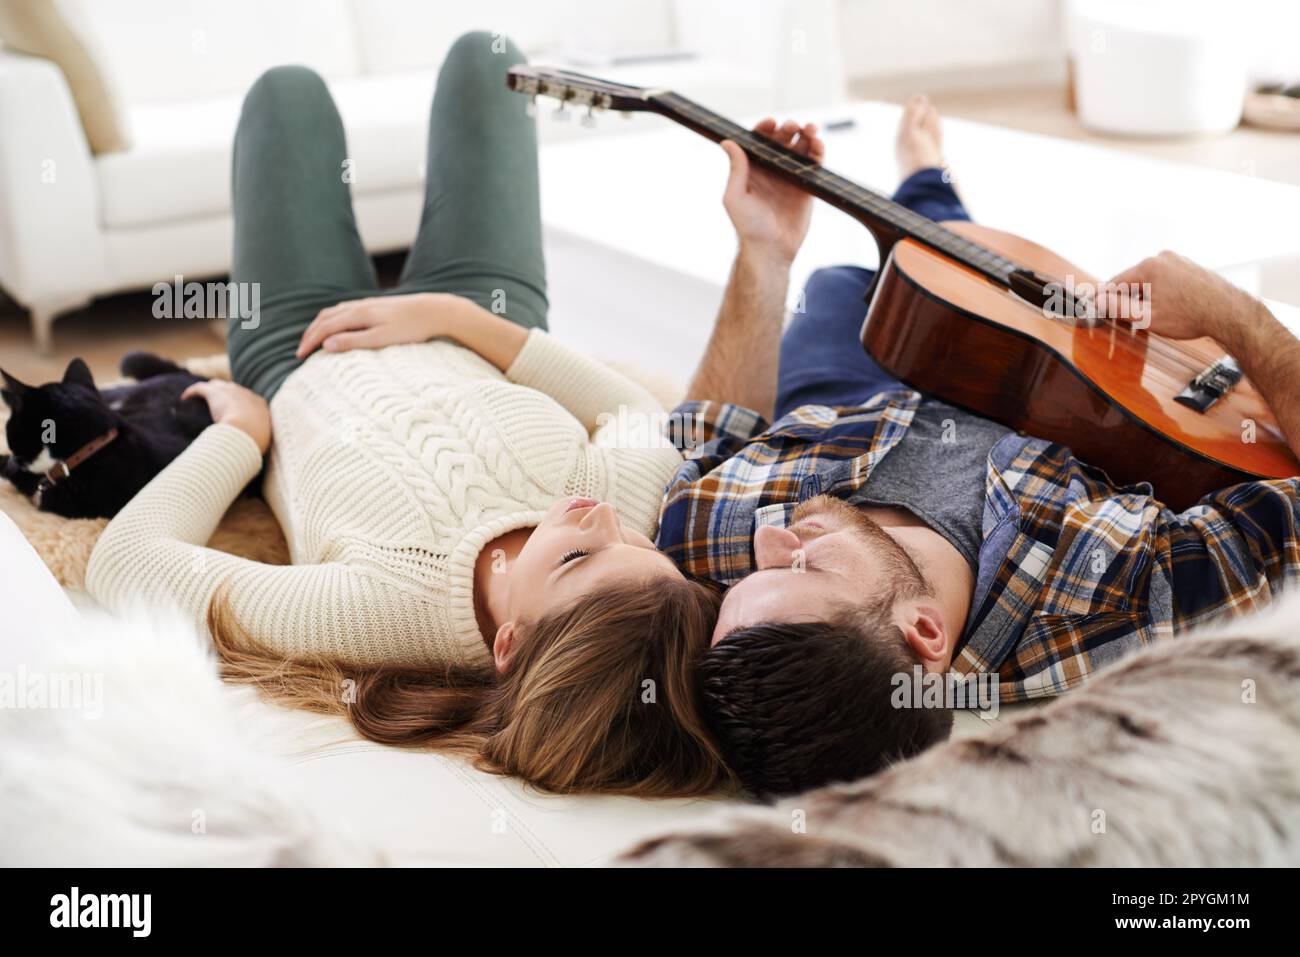 La sua canzone sull'amore e i gatti. un giovane che suona la chitarra mentre si sdraia sul pavimento con la sua ragazza. Foto Stock